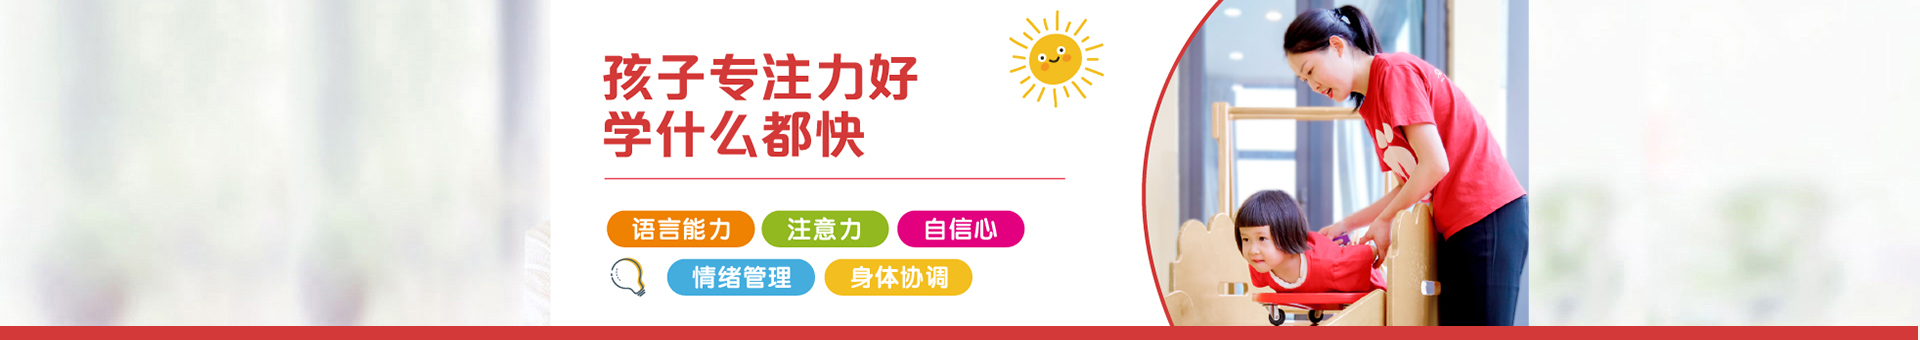 徐州兒童語言能力培養小方法-經驗分享-徐州眾艾教育咨詢有限公司